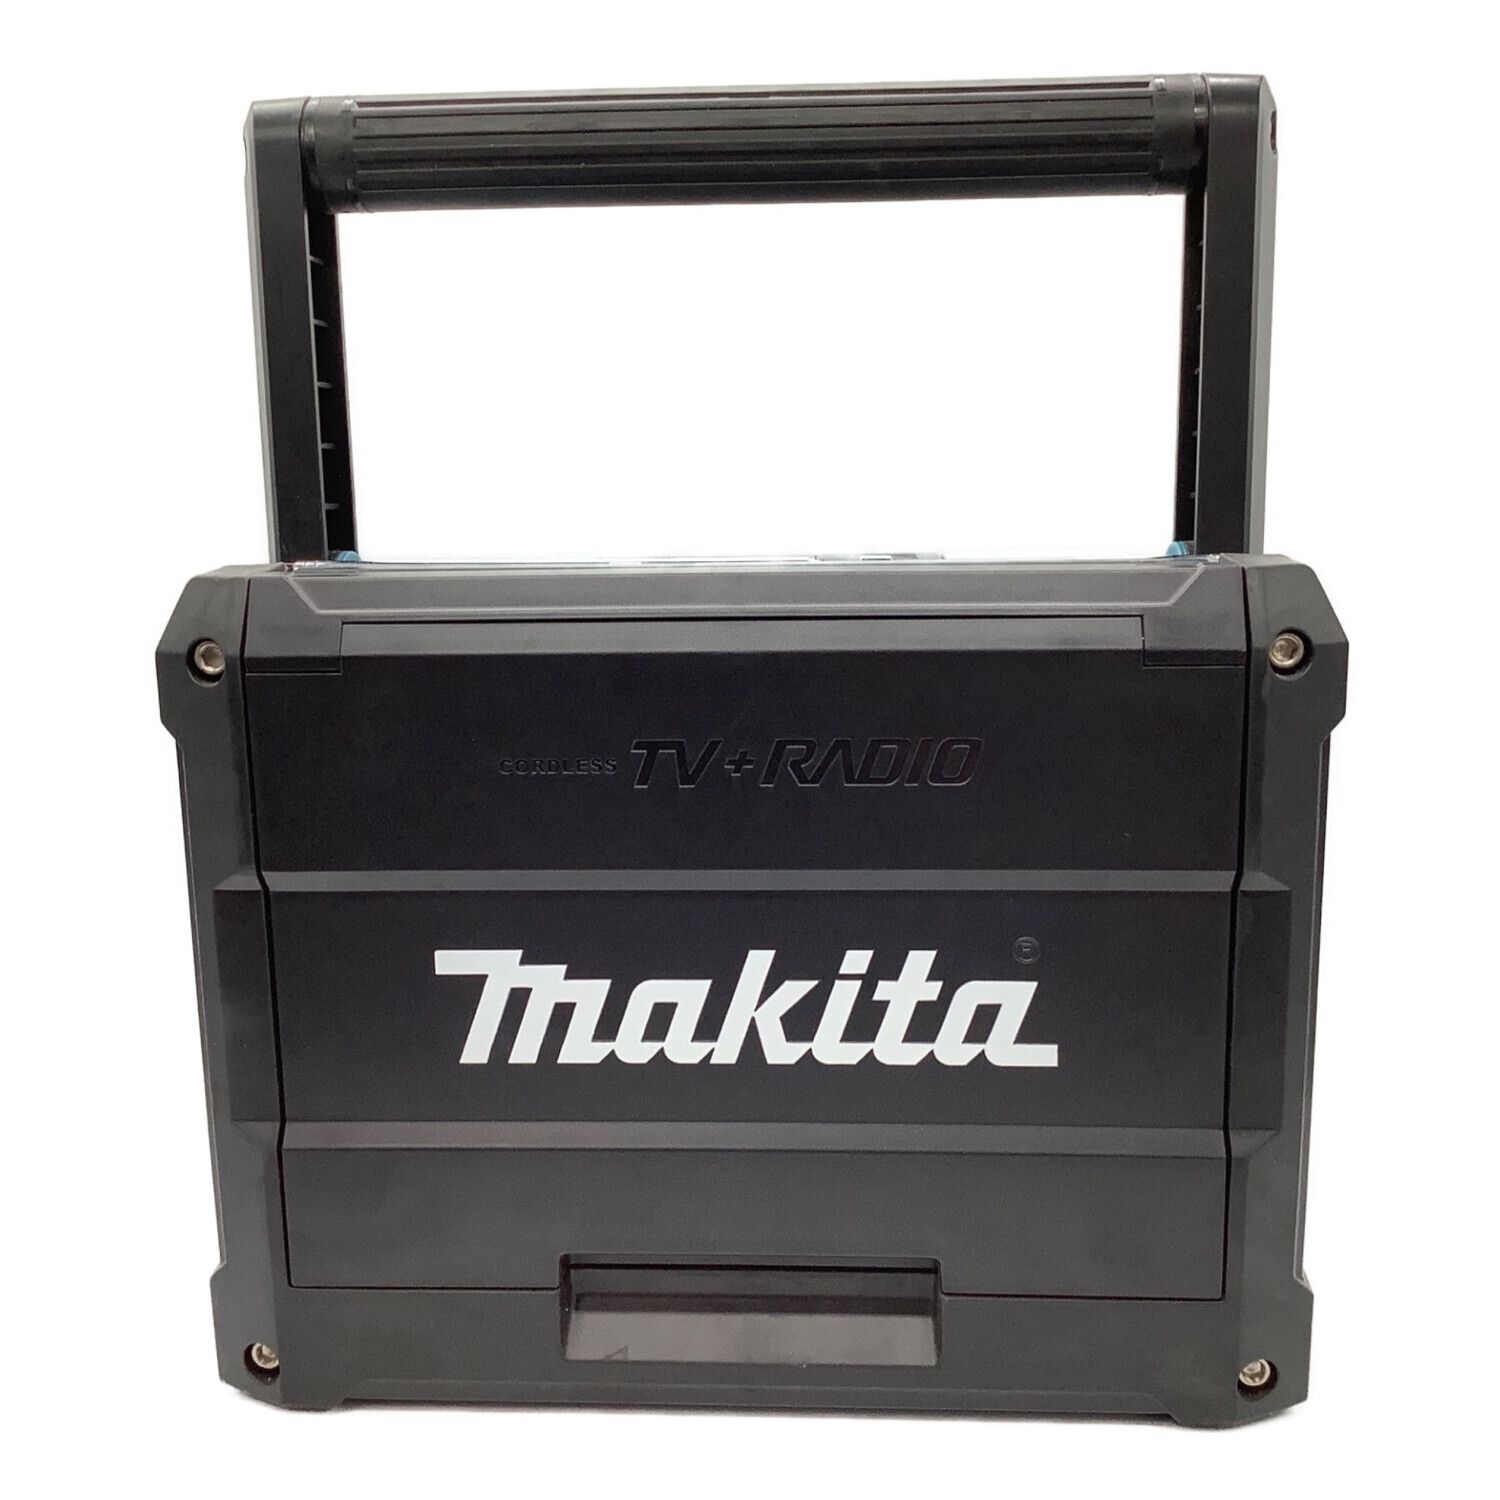 MAKITA (マキタ) 充電式ラジオ付きテレビ リチウムイオンバッテリ対応